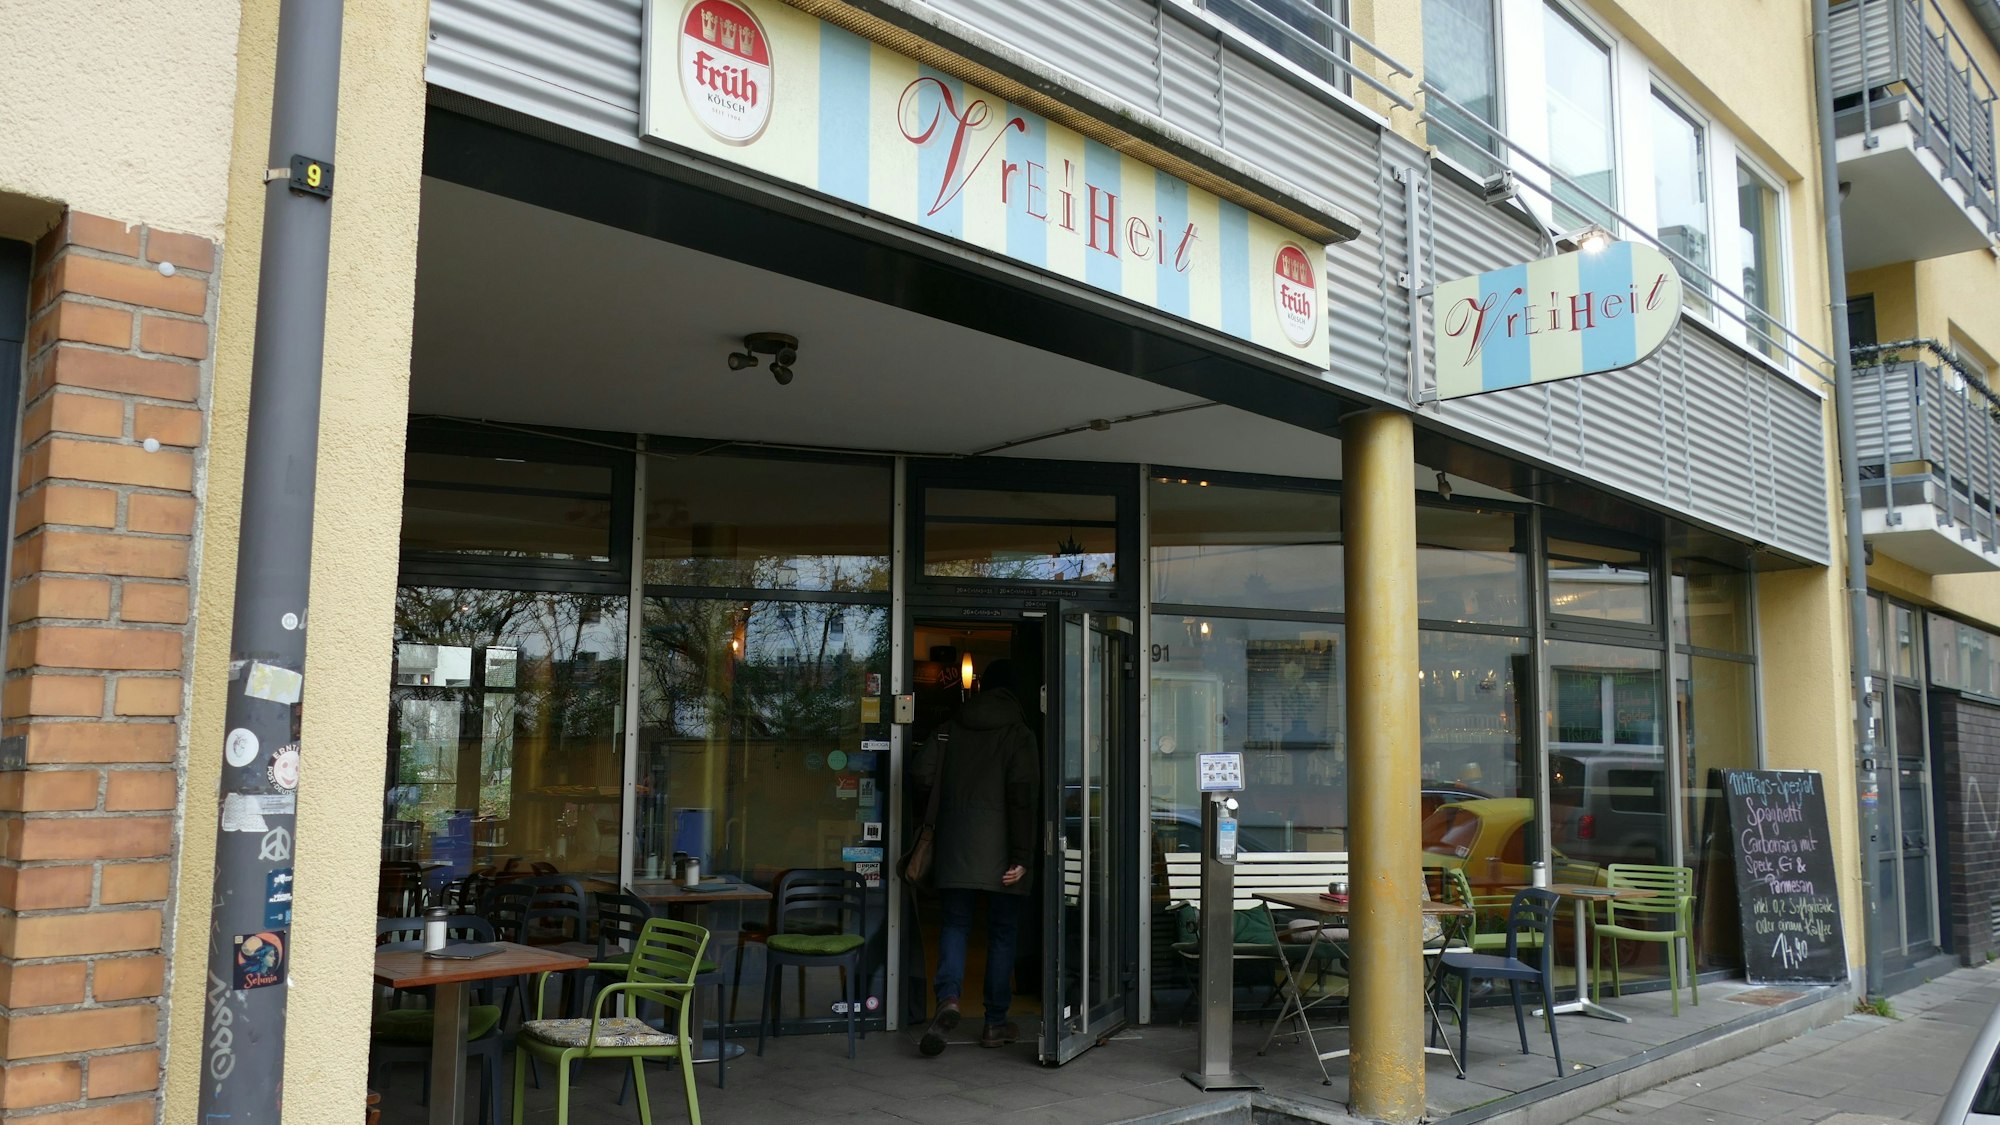 Der Eingang zu einem Café ist zu sehen.